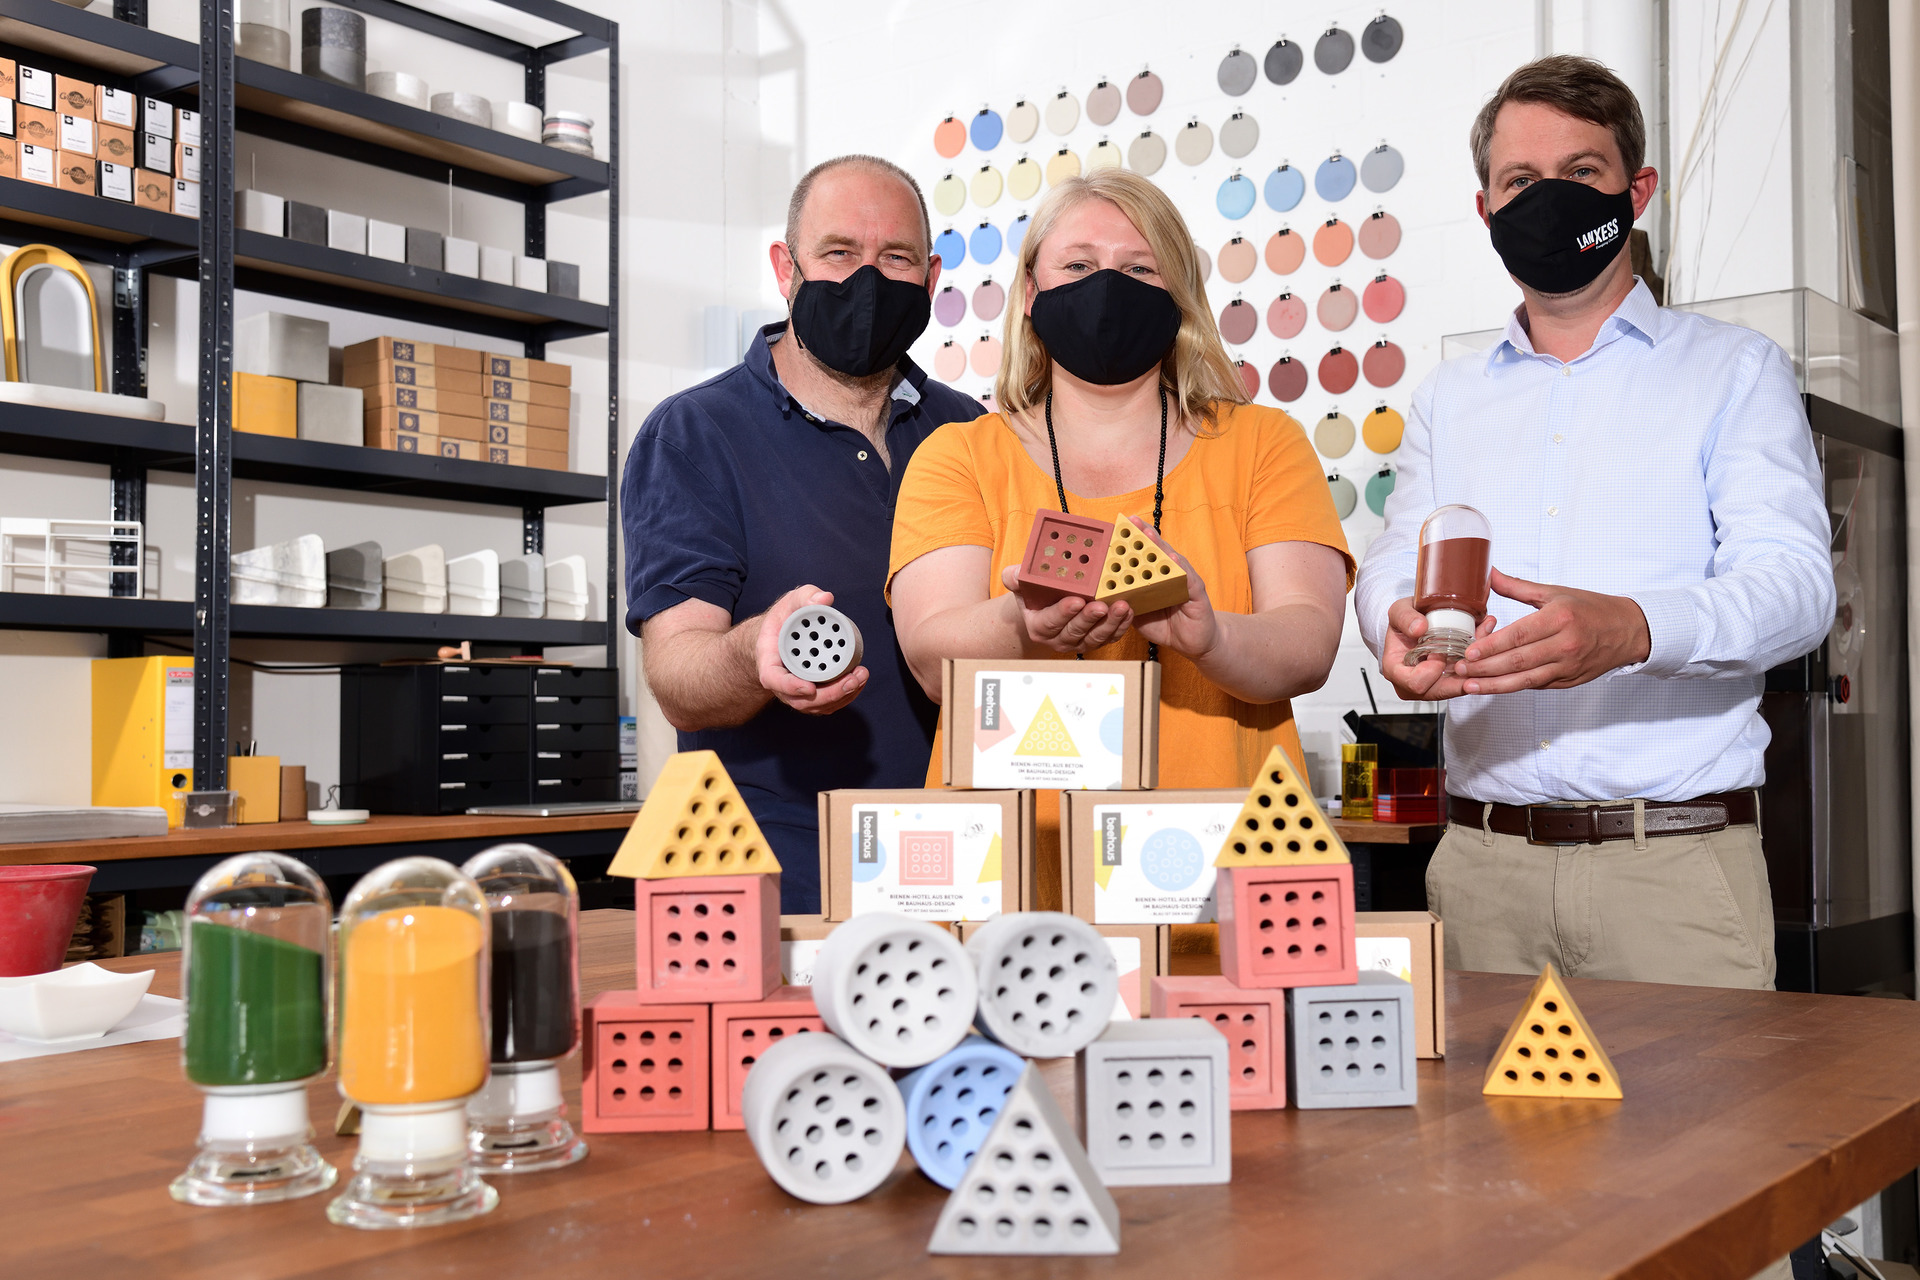 朗盛无机颜料事业部Christoph Schmidt(右)与Grellroth公司的Diana Schmidt-Grellroth和Bernd Grellmann一起介绍了颜料在蜂舍中的可能应用。欧洲杯体彩竞猜